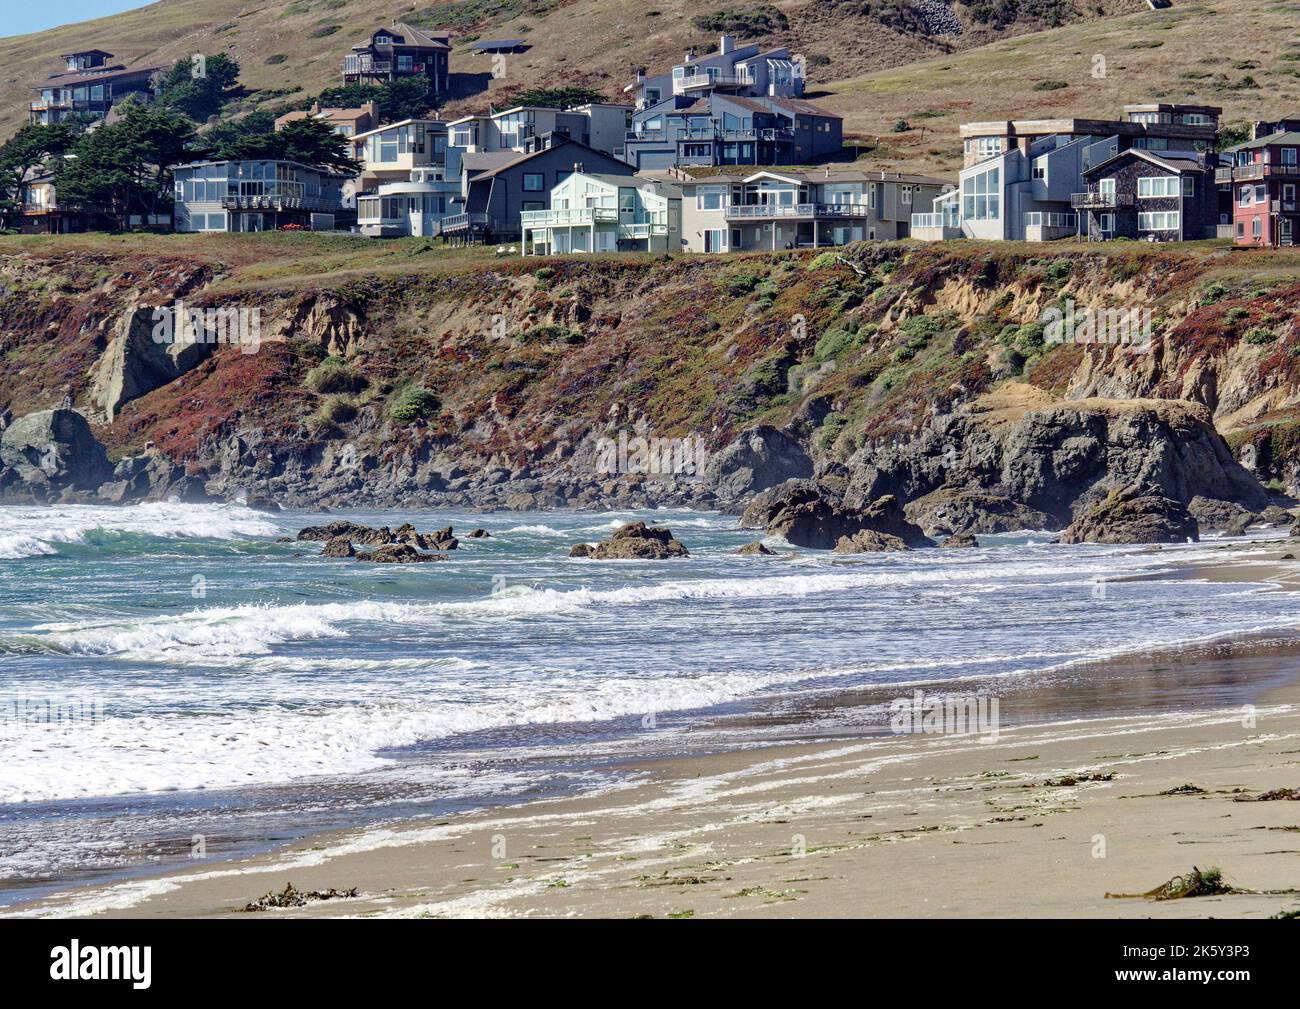 La famosa Dillon Beach nella contea di Marin, California, Stati Uniti. Dillon Beach vicino a Tomales. Accesso pubblico gratuito sotto la linea dell'alta marea. Foto Stock